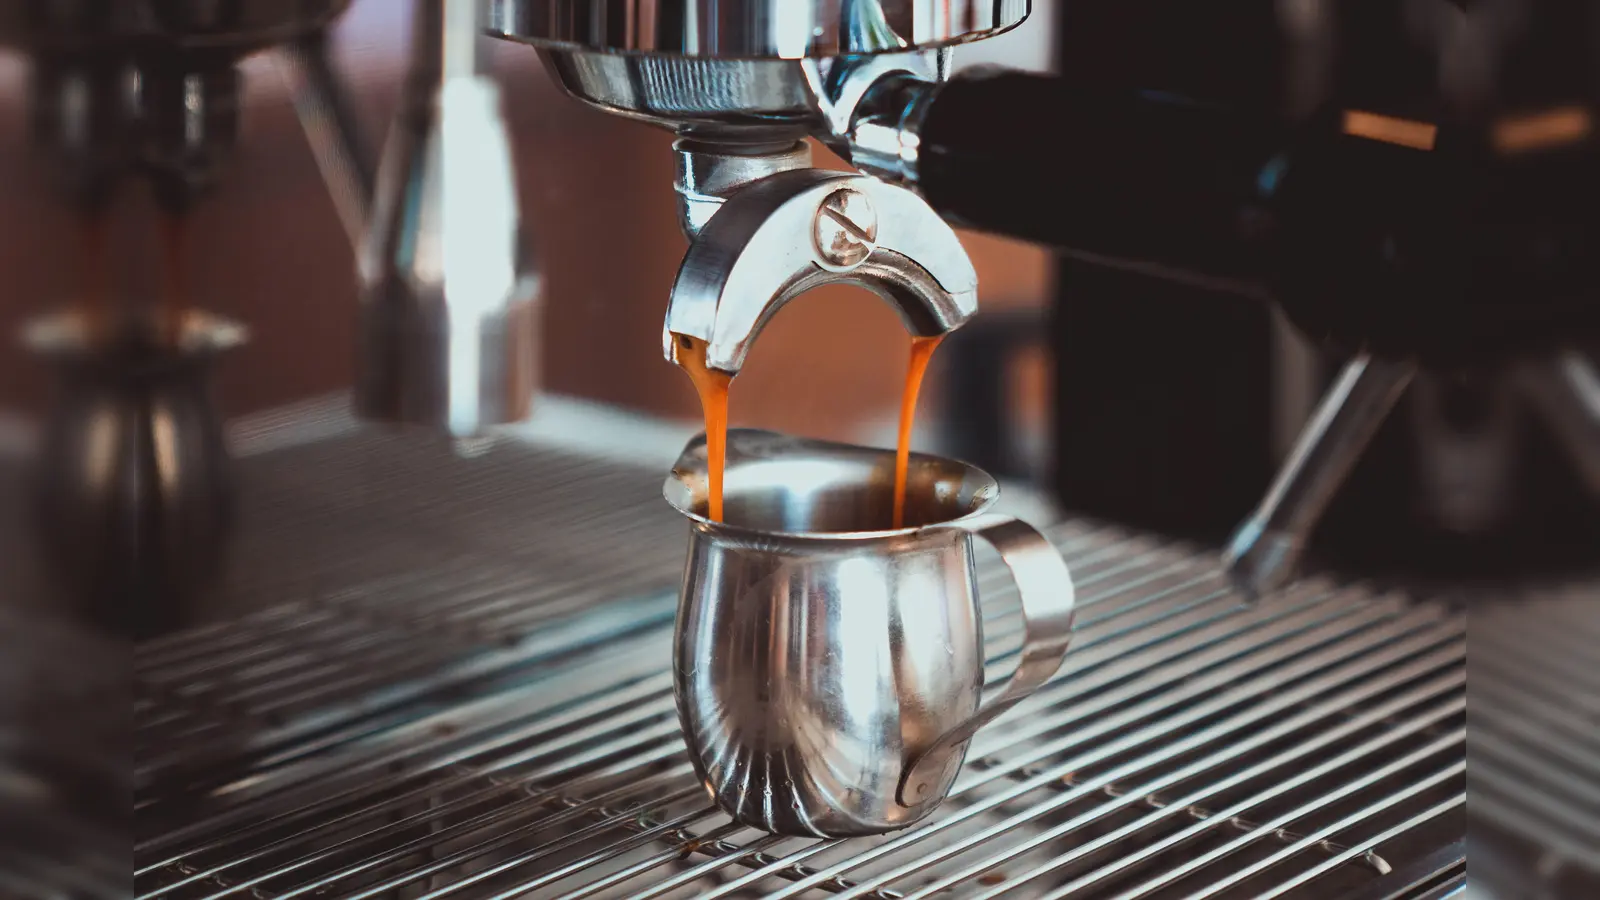 Espresso wie vom Profi - aber wie machen die Profis den denn? (Foto: muertos crew by pixabay)